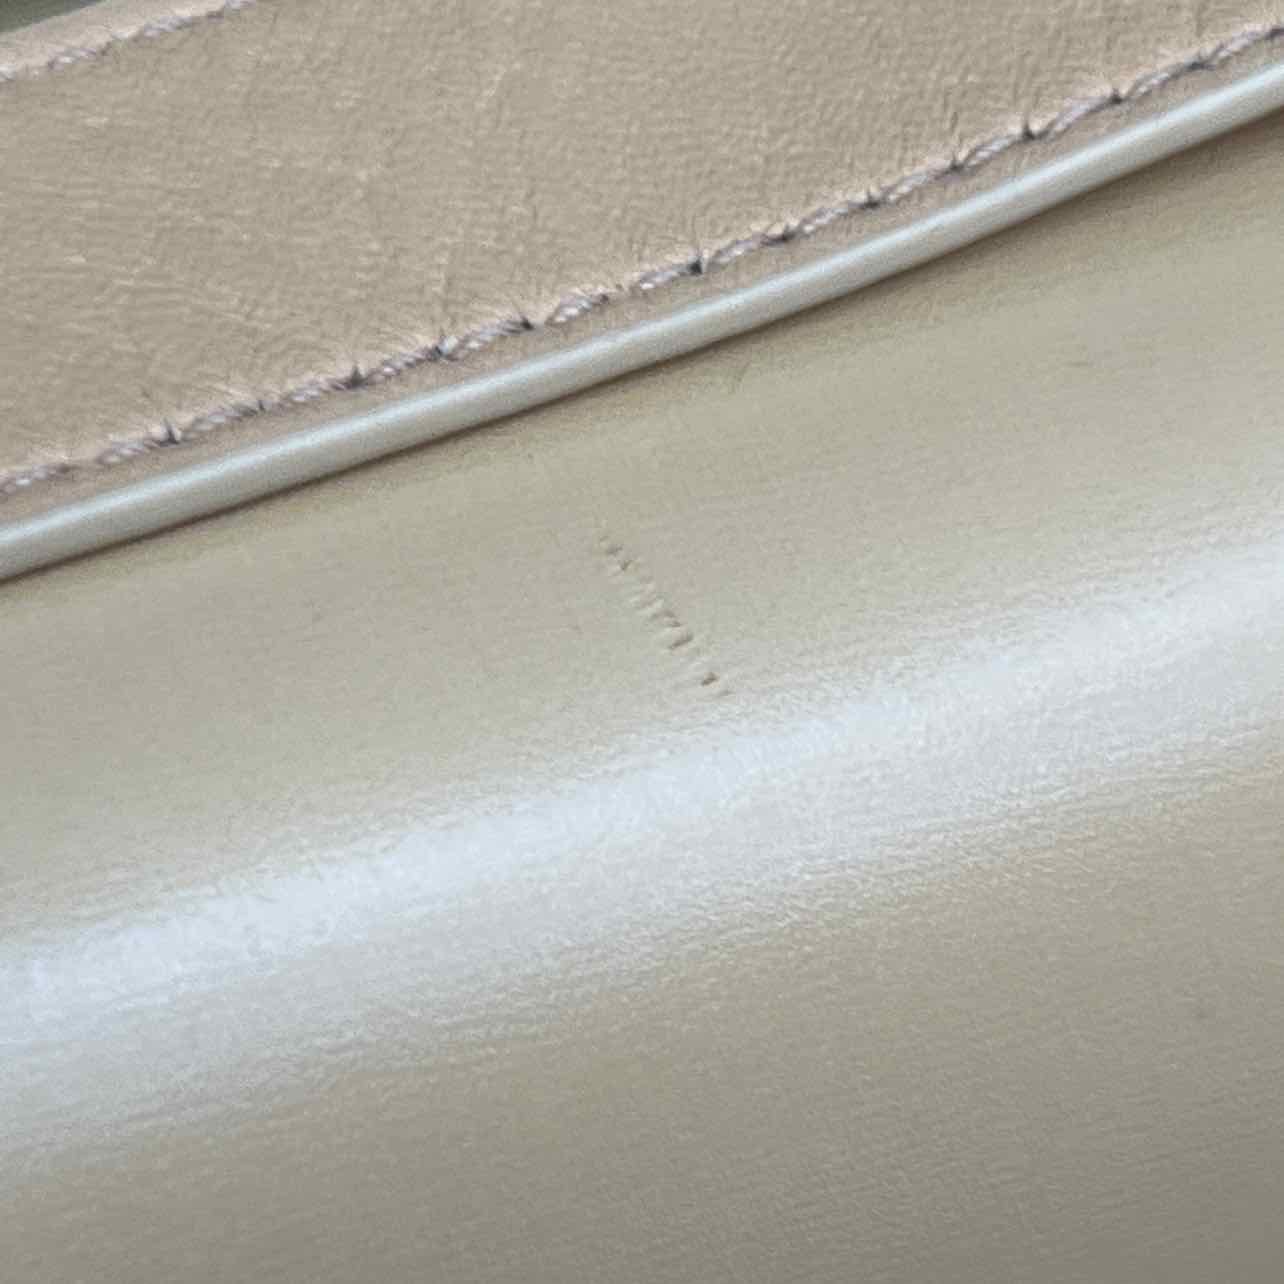 Bottega Veneta Handbag "CLIP BAG" New (Cond) Almond Size OS